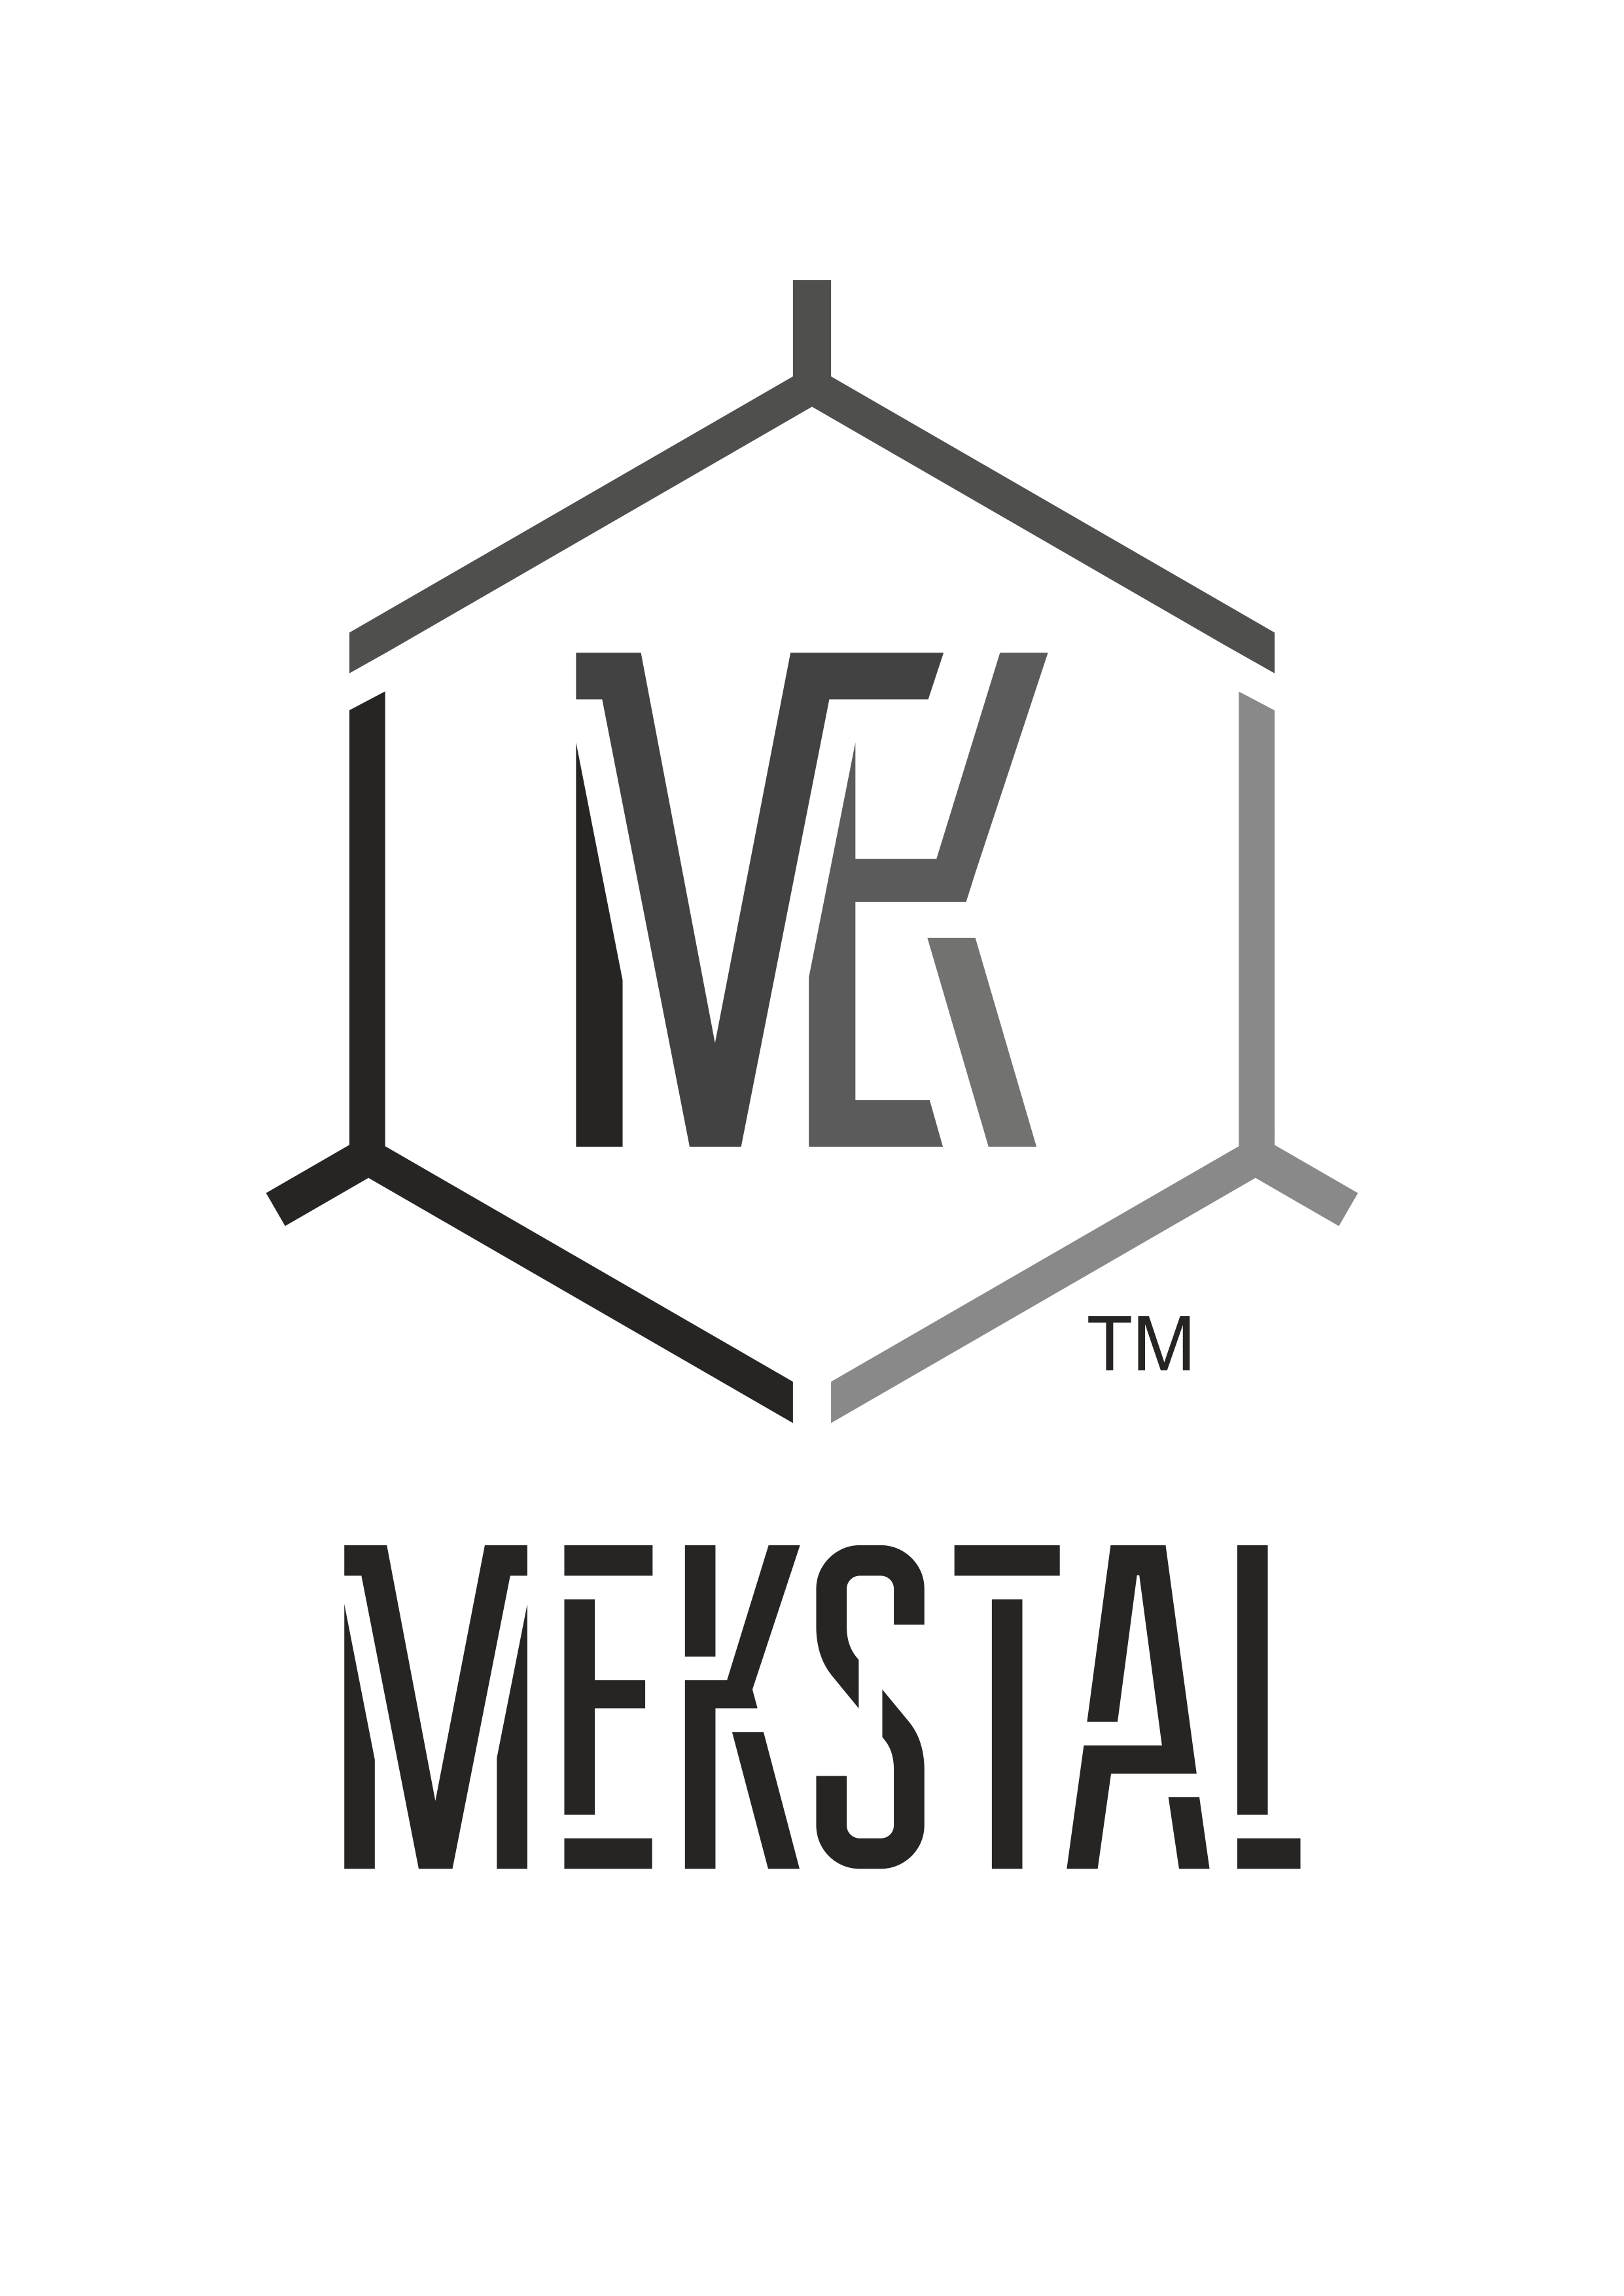 mekstal-logo